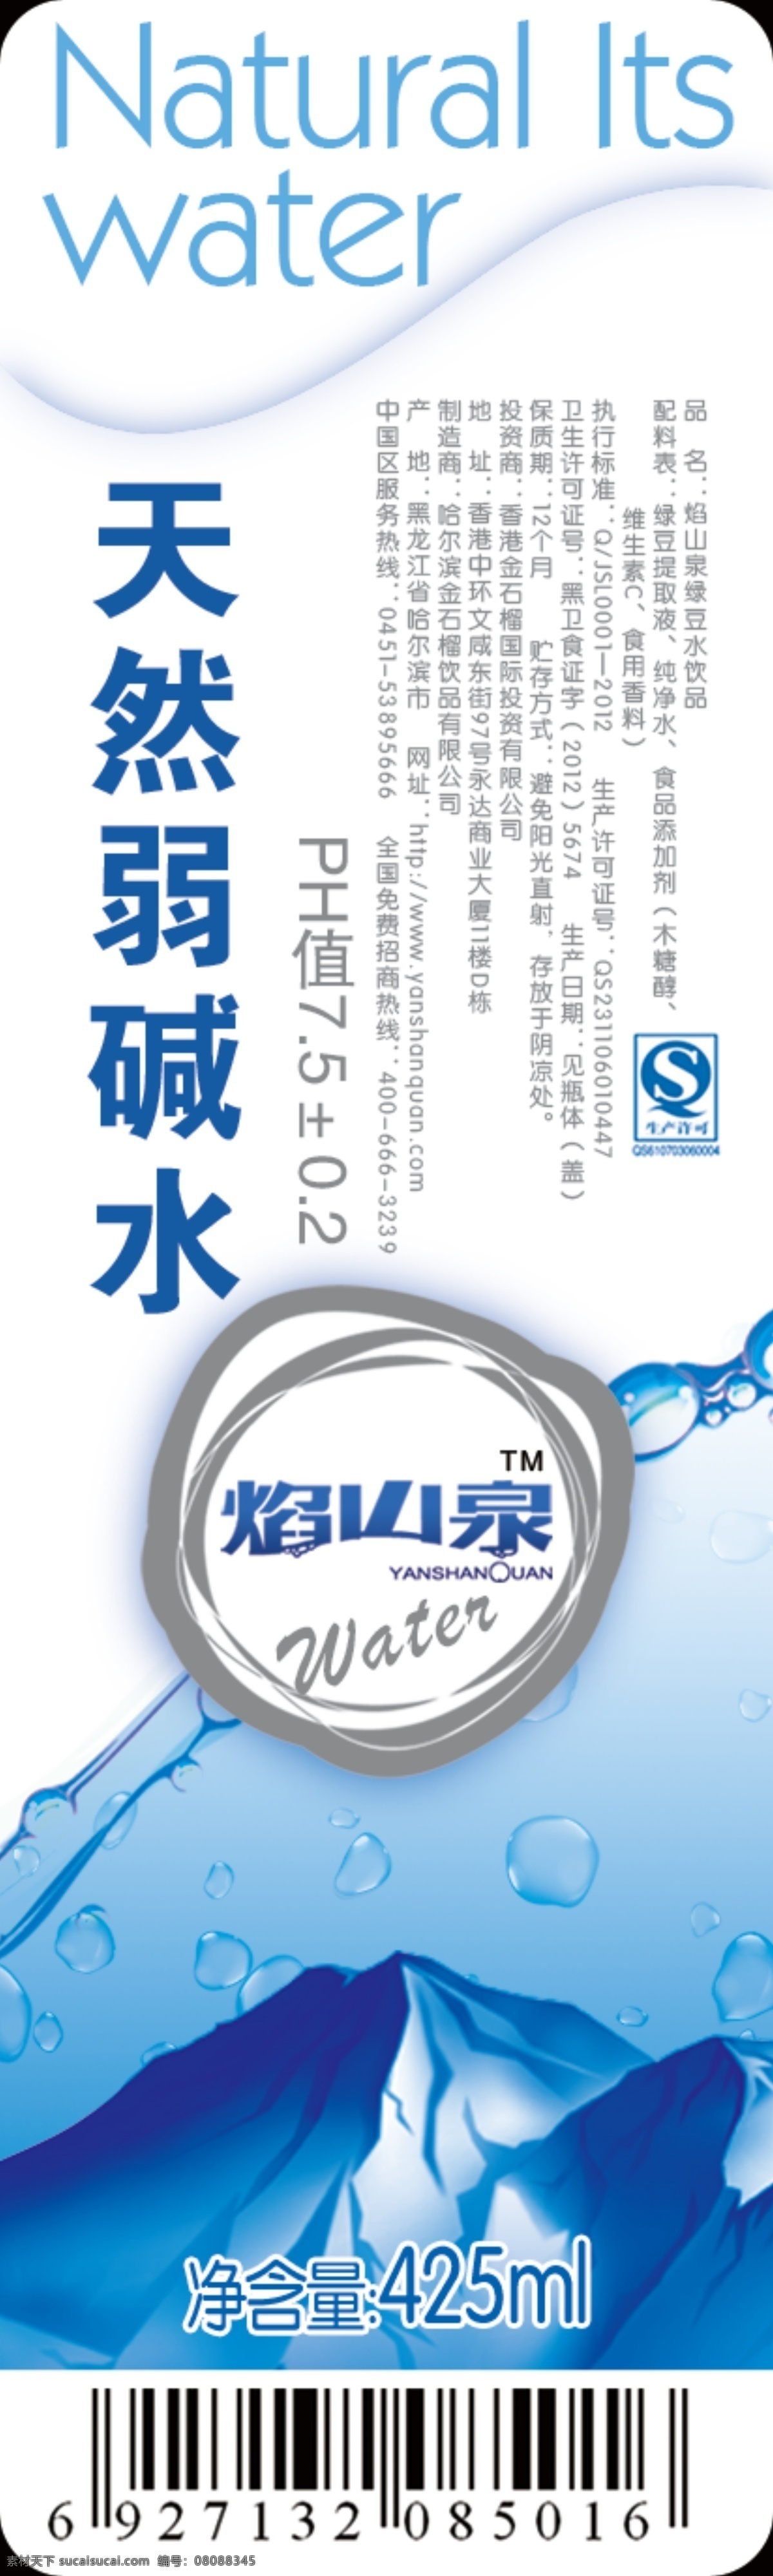 包装设计 标贴设计 广告设计模板 源文件 天然水 模板下载 弱碱水 水标贴 水饮品 psd源文件